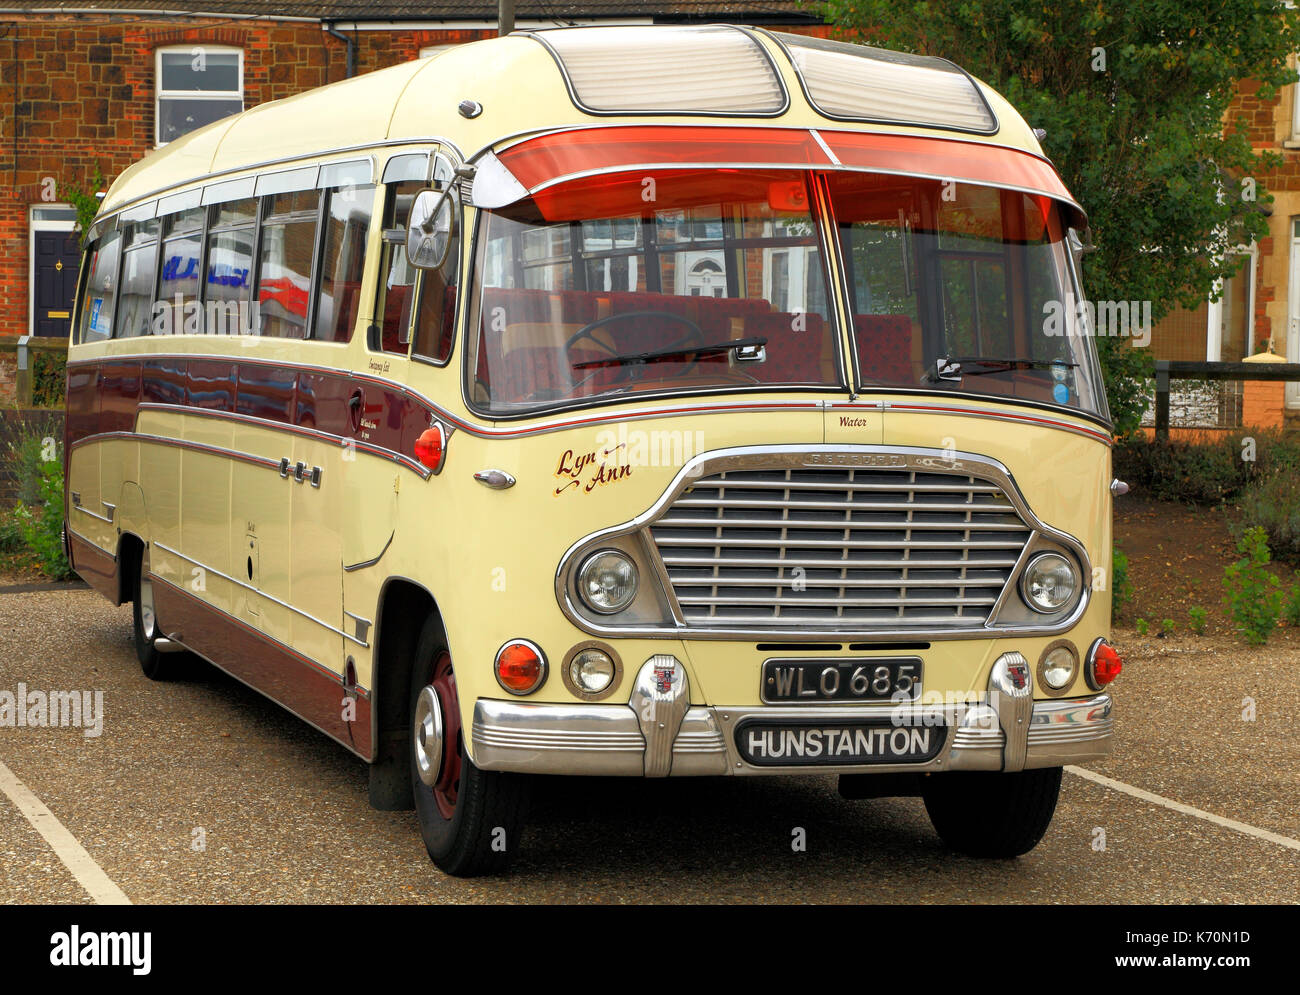 Jahrgang Trainer, gebaut 1959, Trainer, spratt's Trainer, Bus, Busse, Reisen, Transport, Wreningham, Norfolk, England, Großbritannien Stockfoto